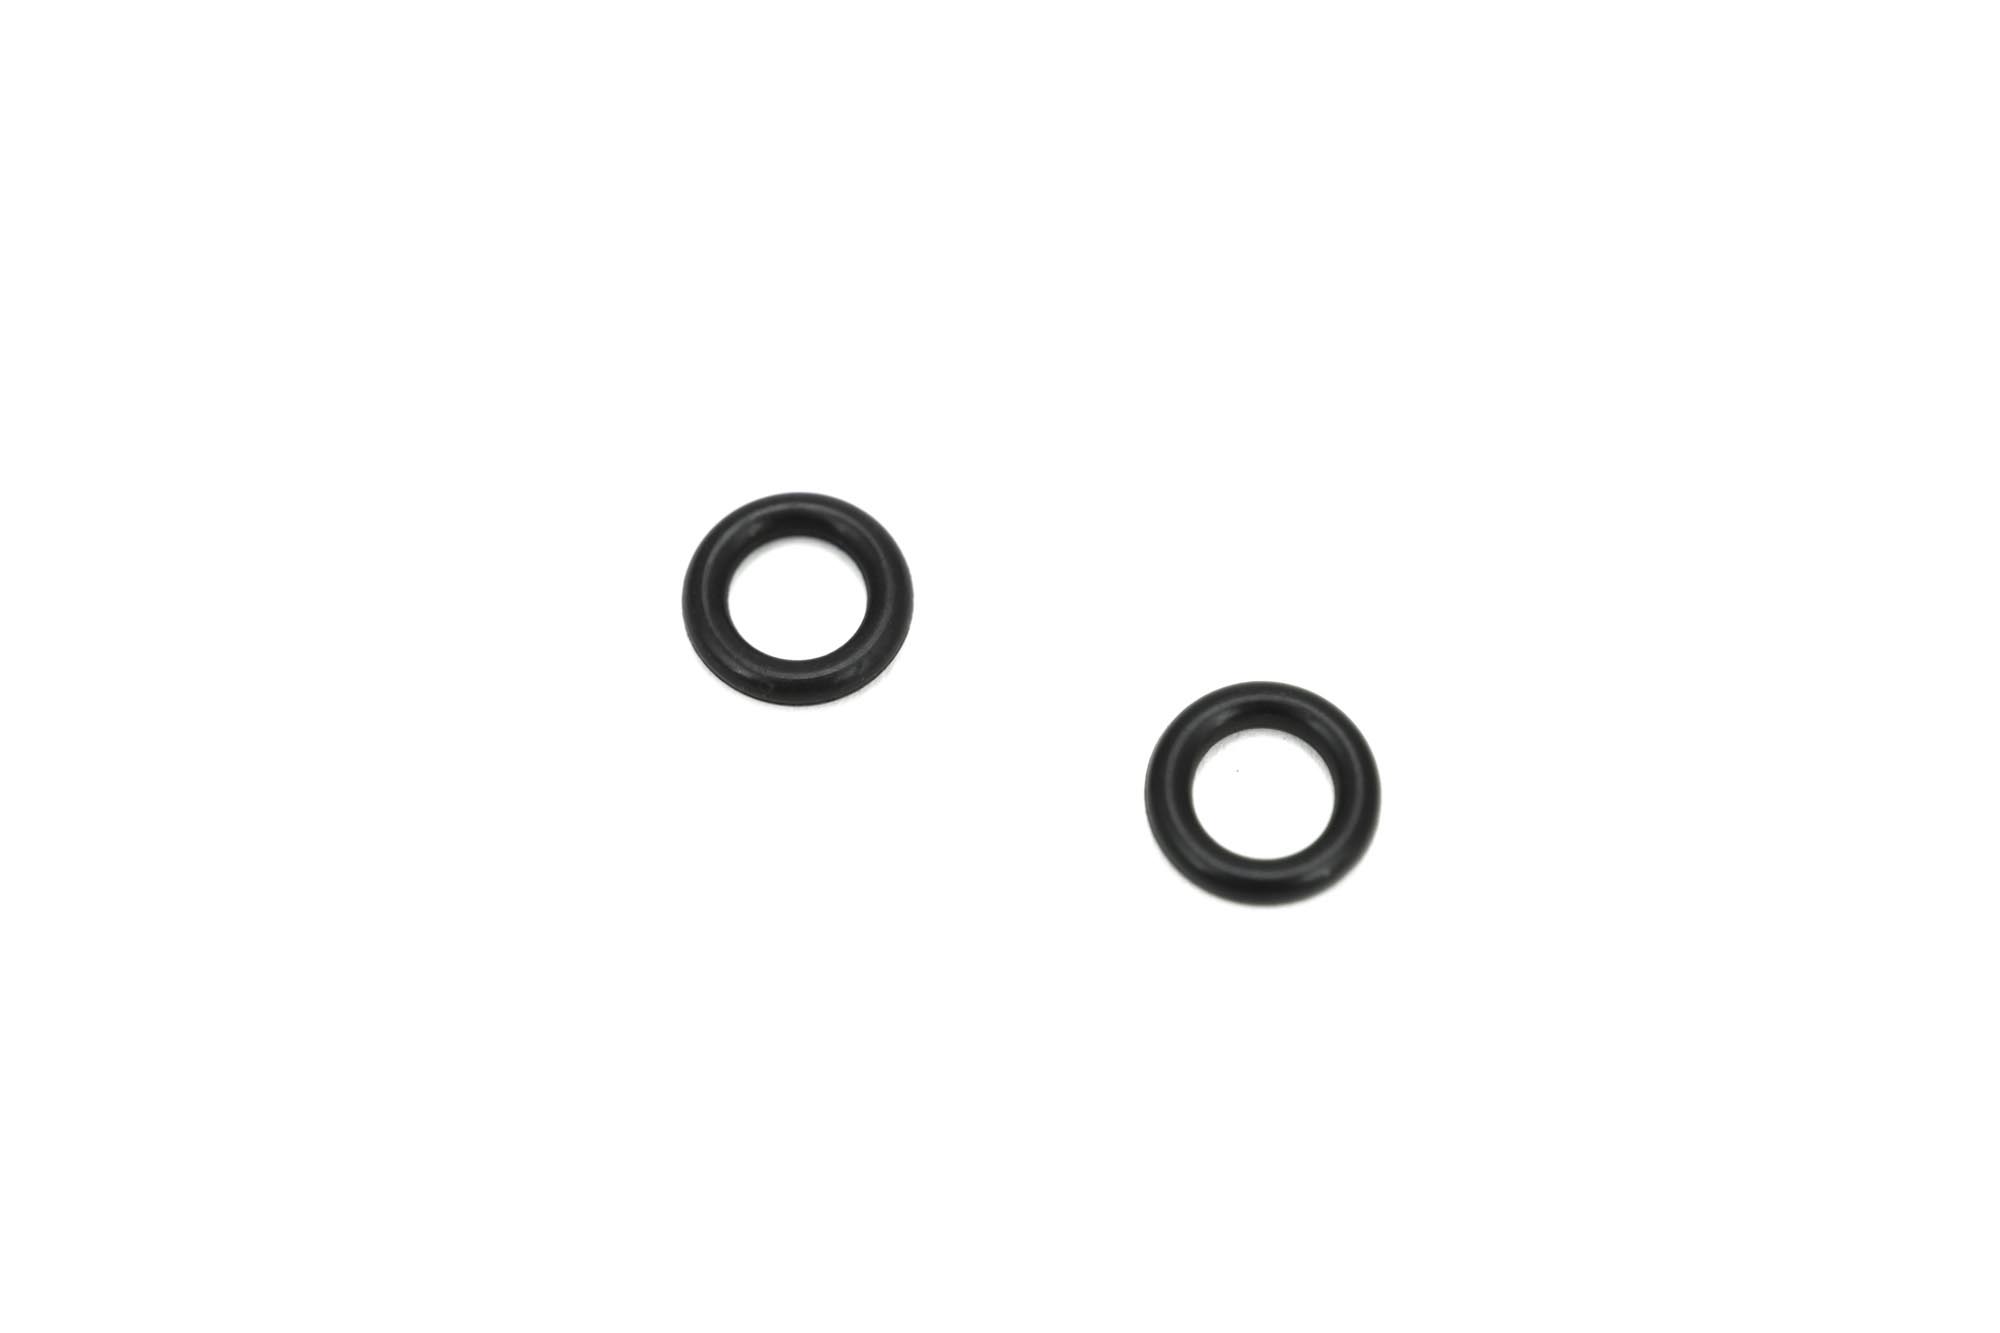 Foto di guarnizioni ad anello di grandi dimensioni per l'estensione della divisoria e il contatore delle bolle